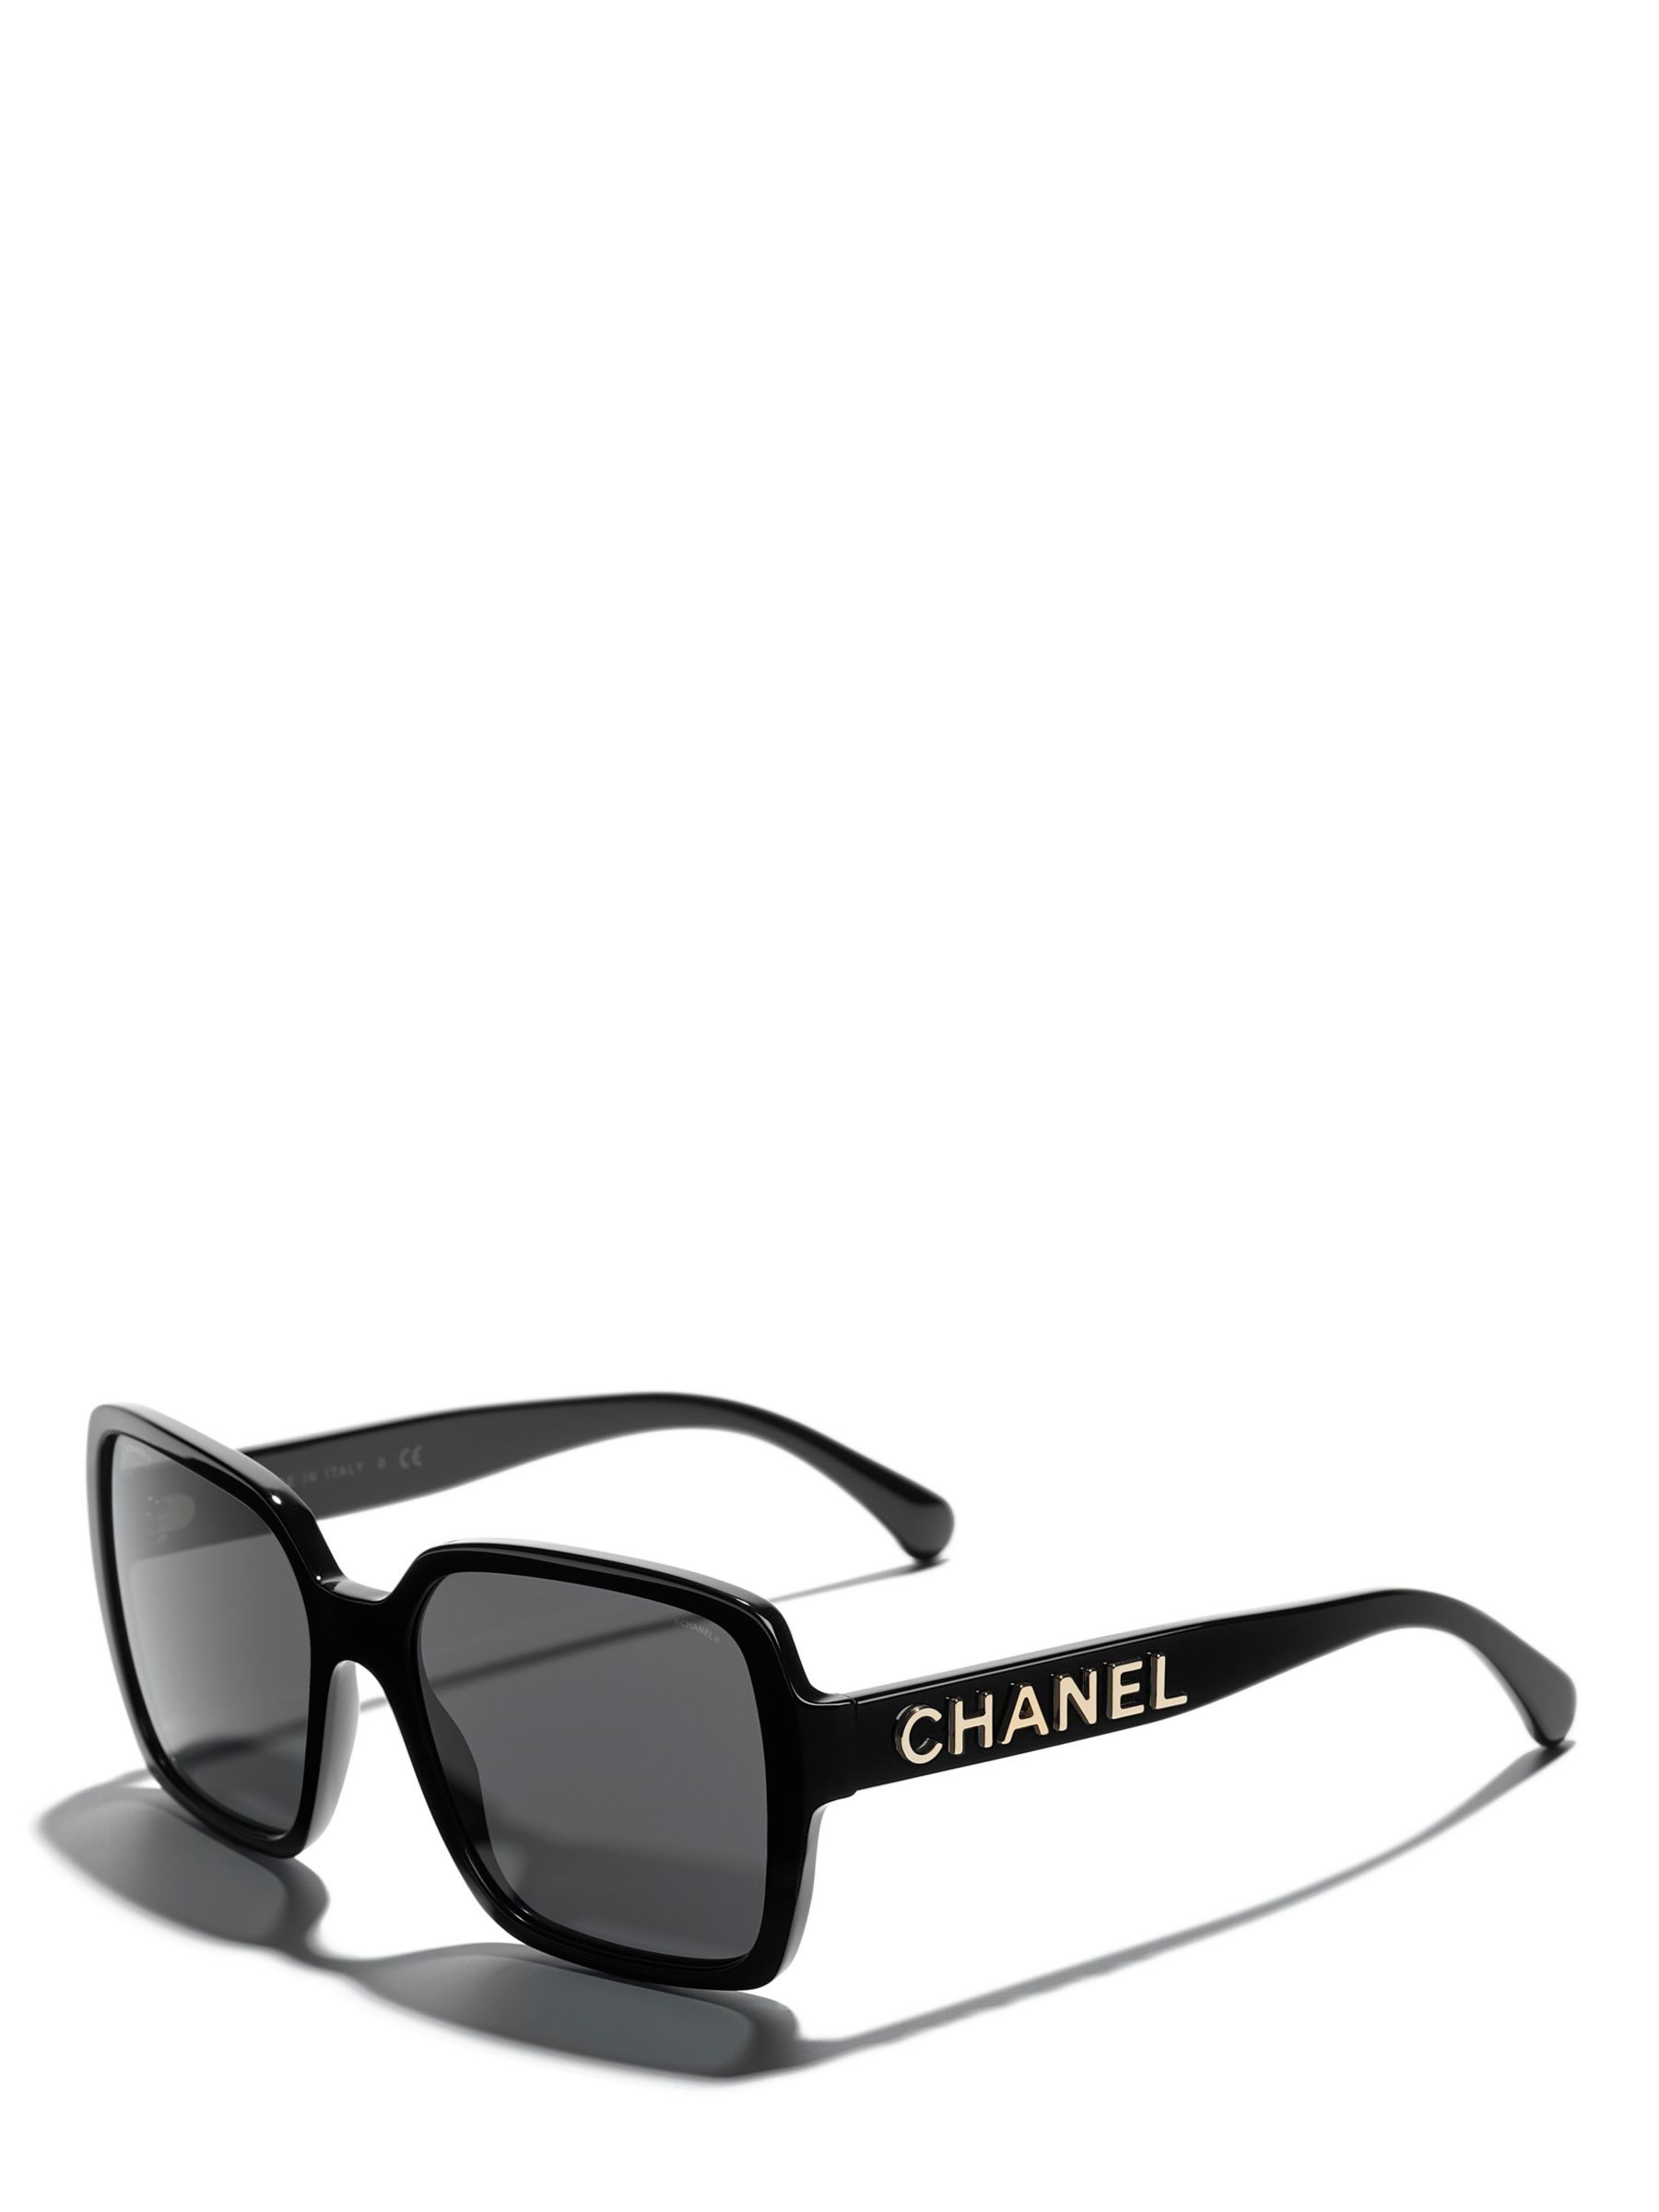 Buy Chanel Women's Sunglasses Online in UAE